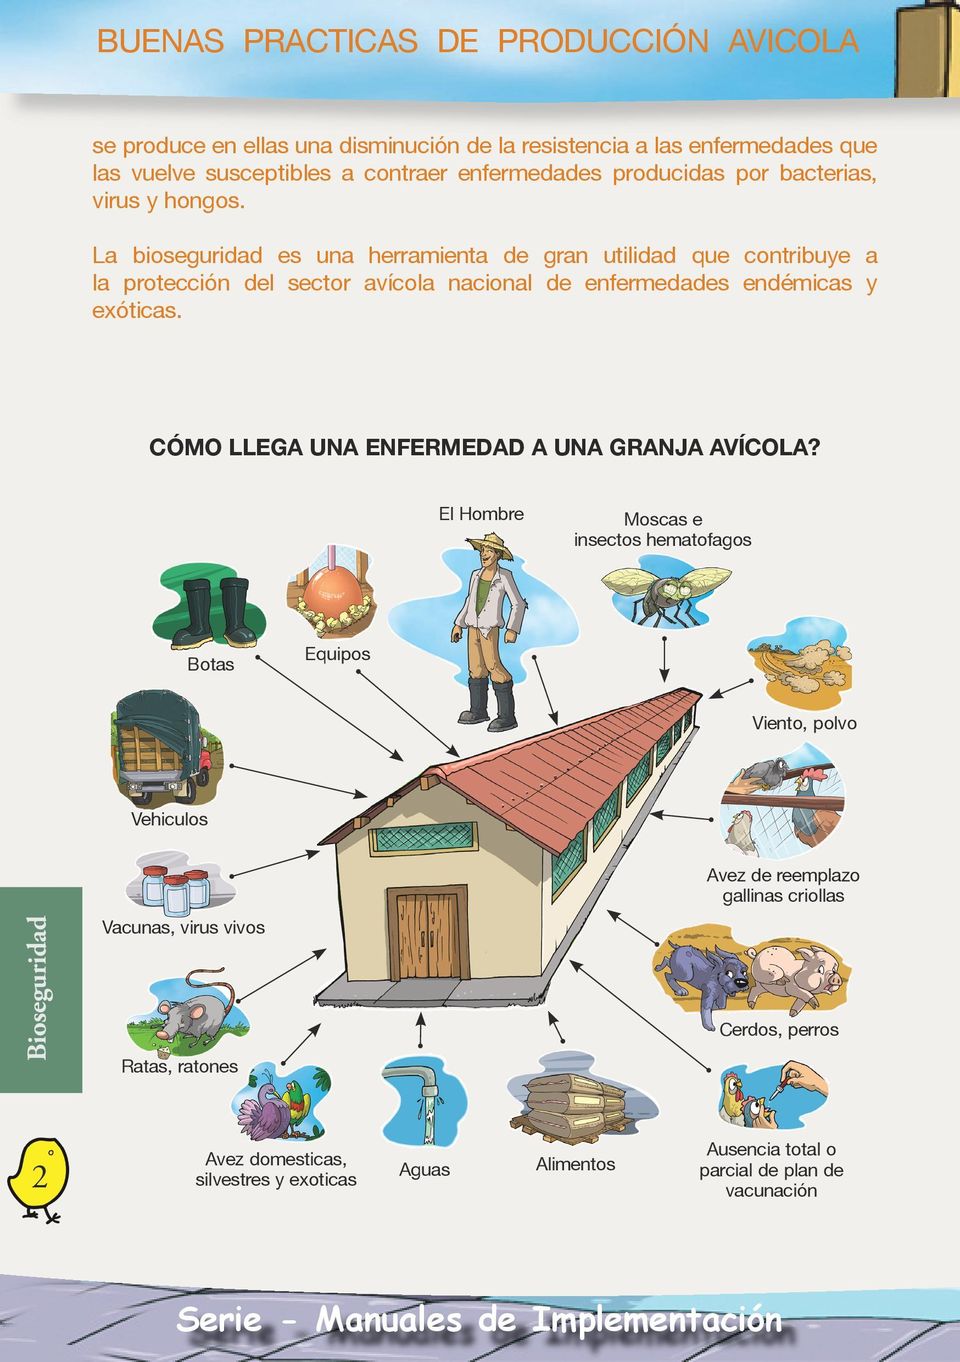 La bioseguridad es una herramienta de gran utilidad que contribuye a la protección del sector avícola nacional de enfermedades endémicas y exóticas.